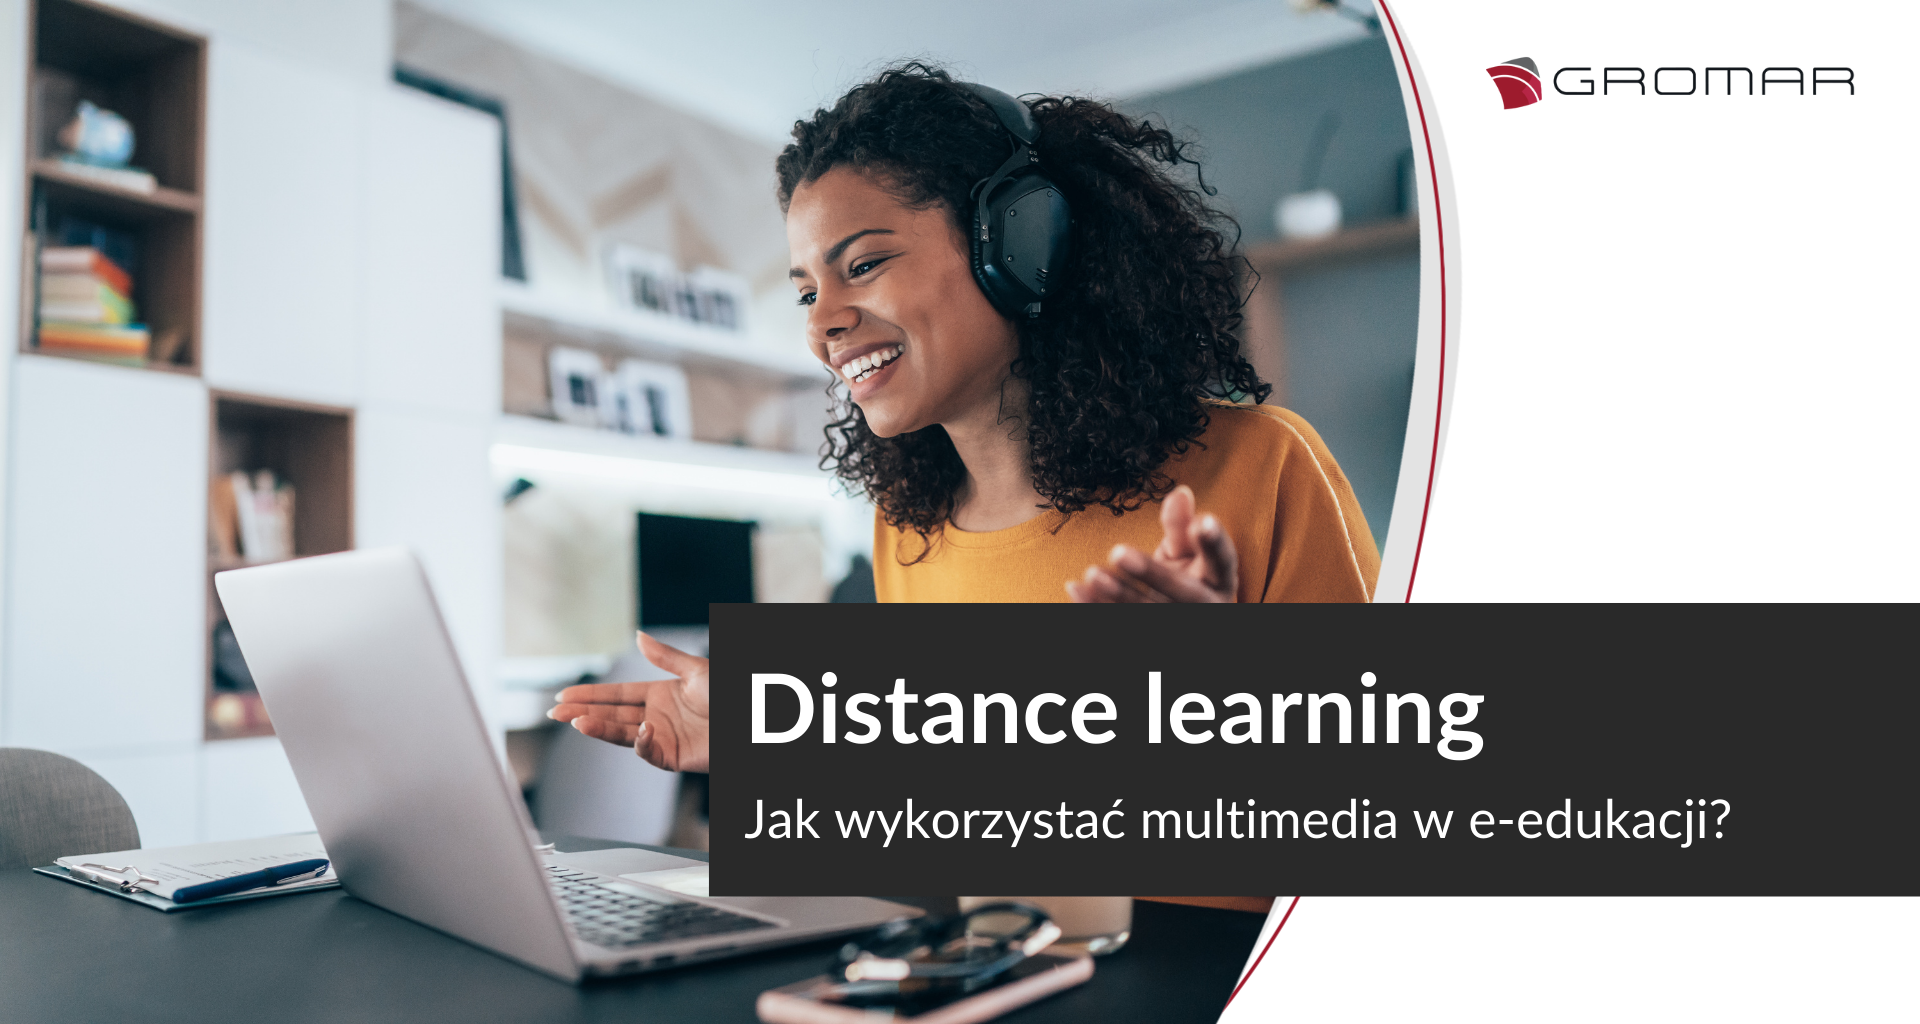 Distance learning ー jak wykorzystać multimedia w edukacji na odległość?